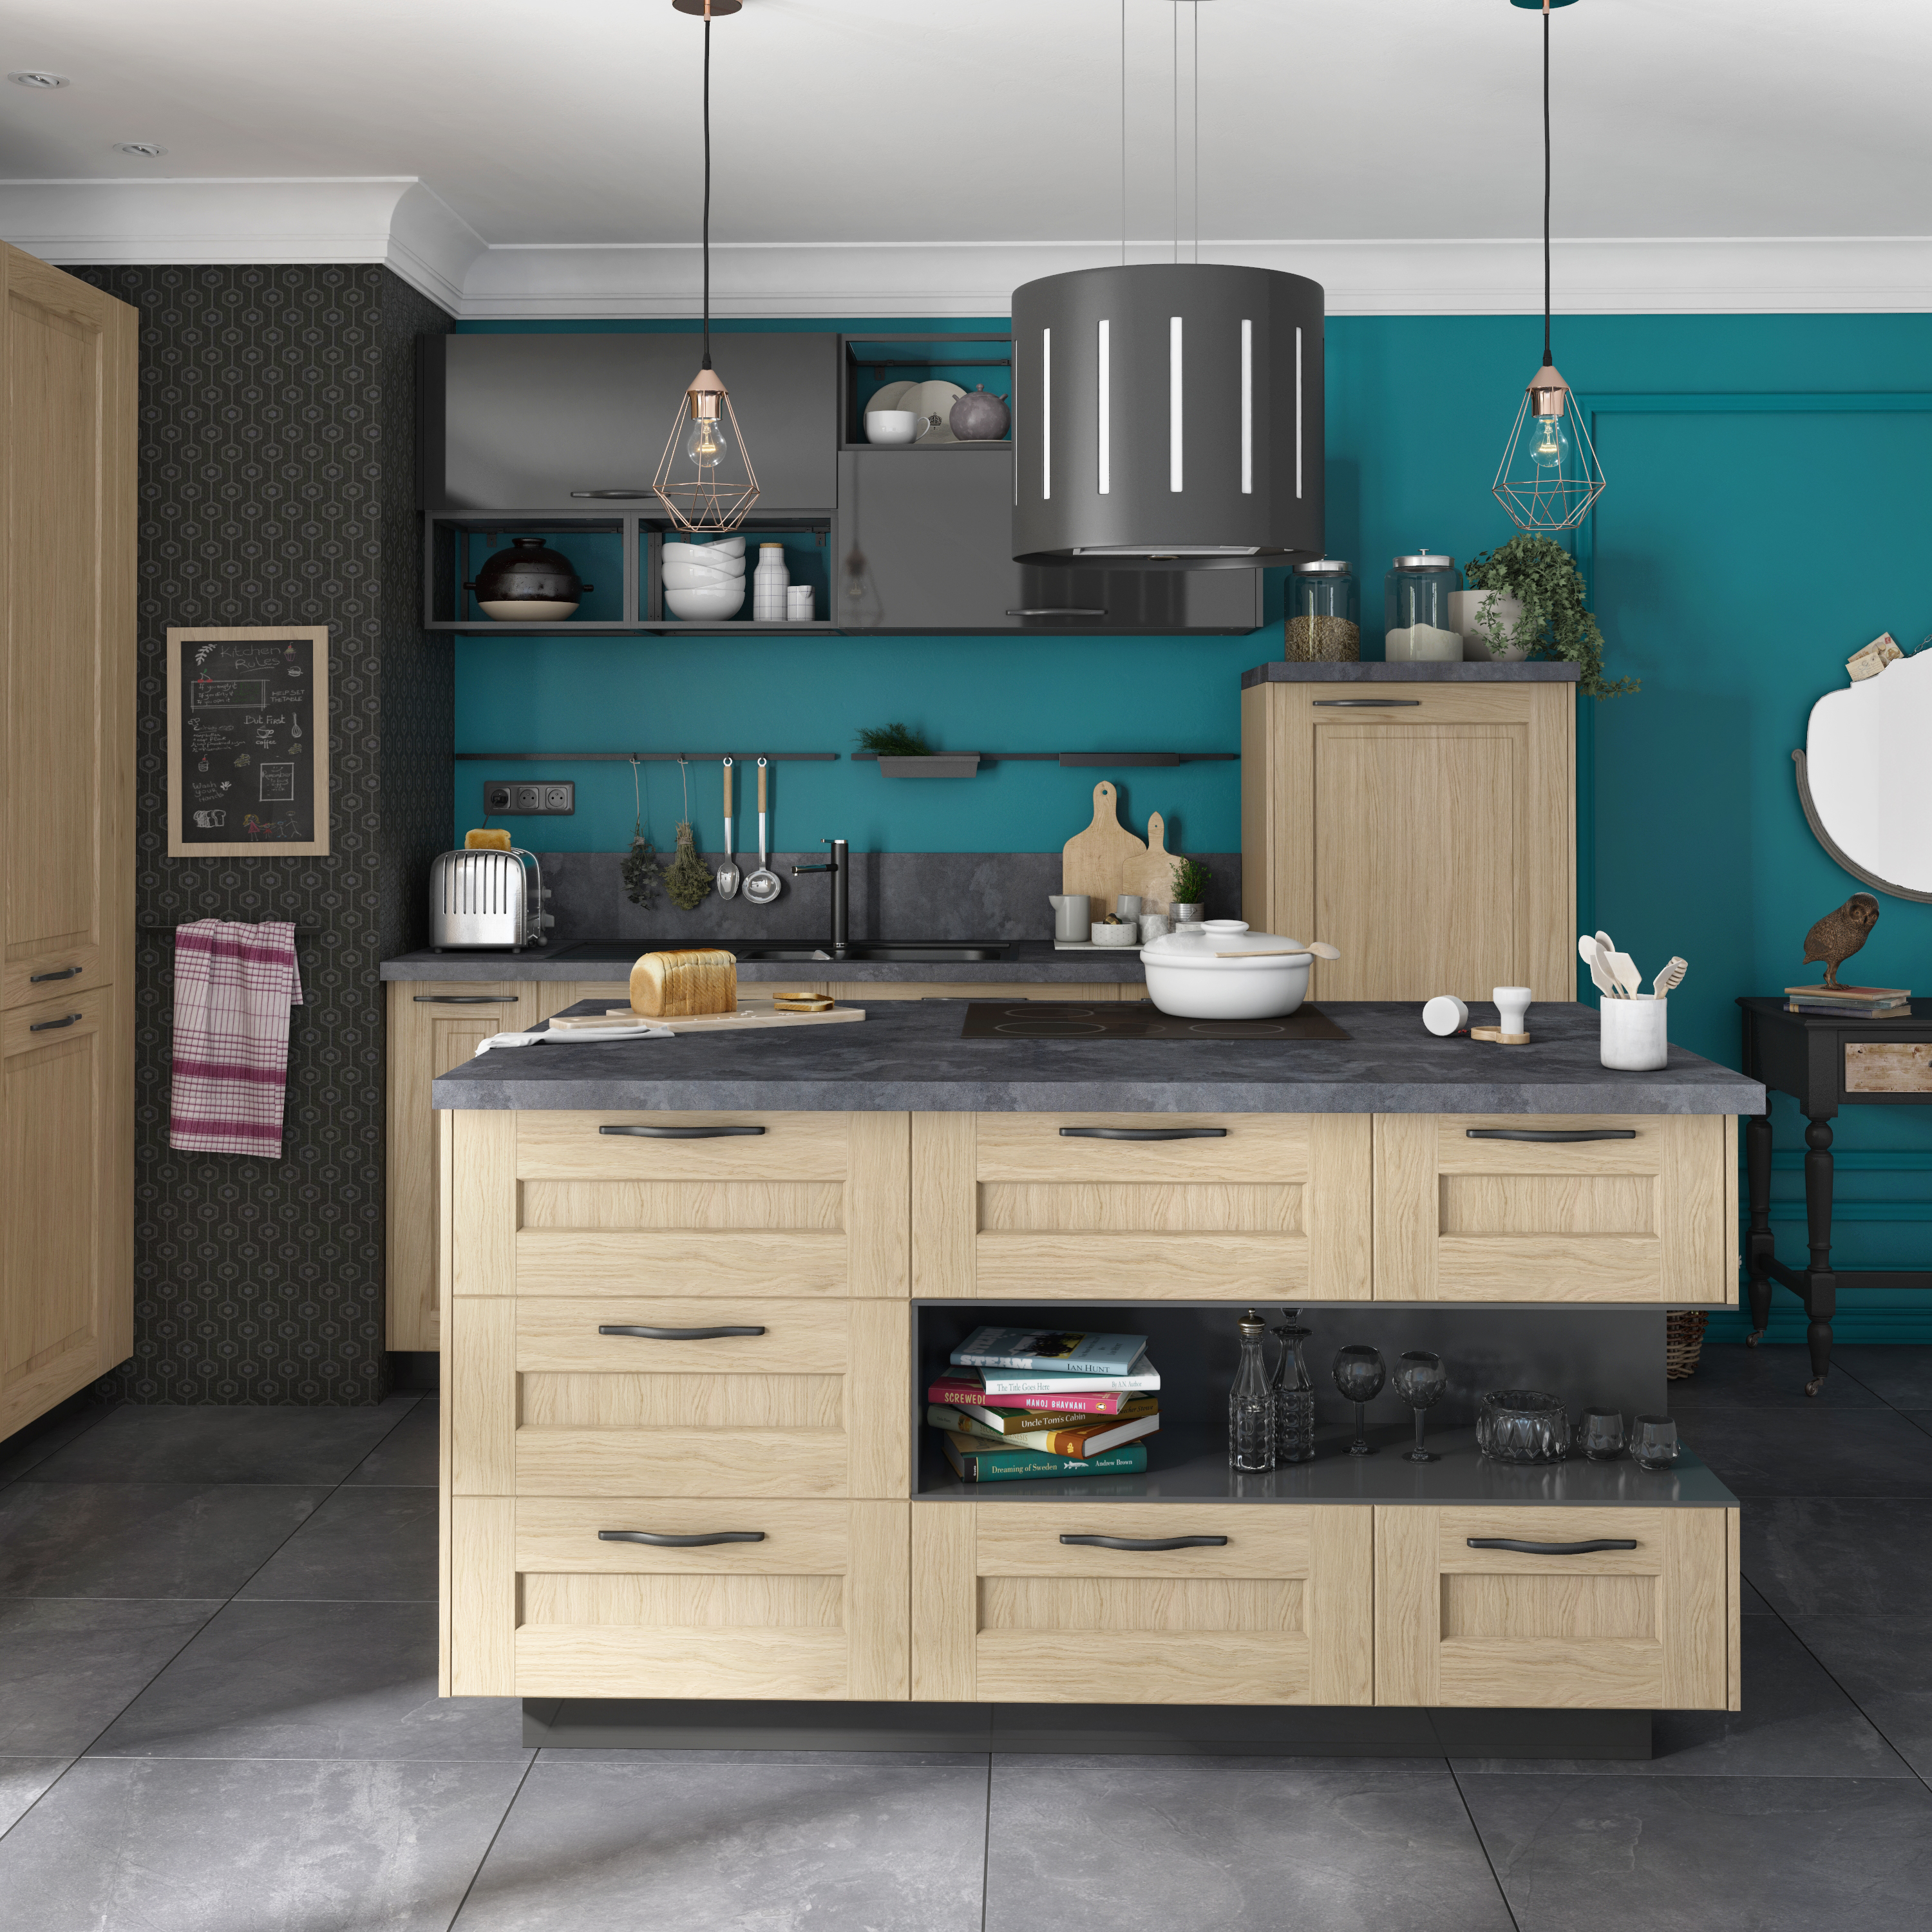 DISEÑO: Las paredes de la cocina, ¿con o sin azulejos?